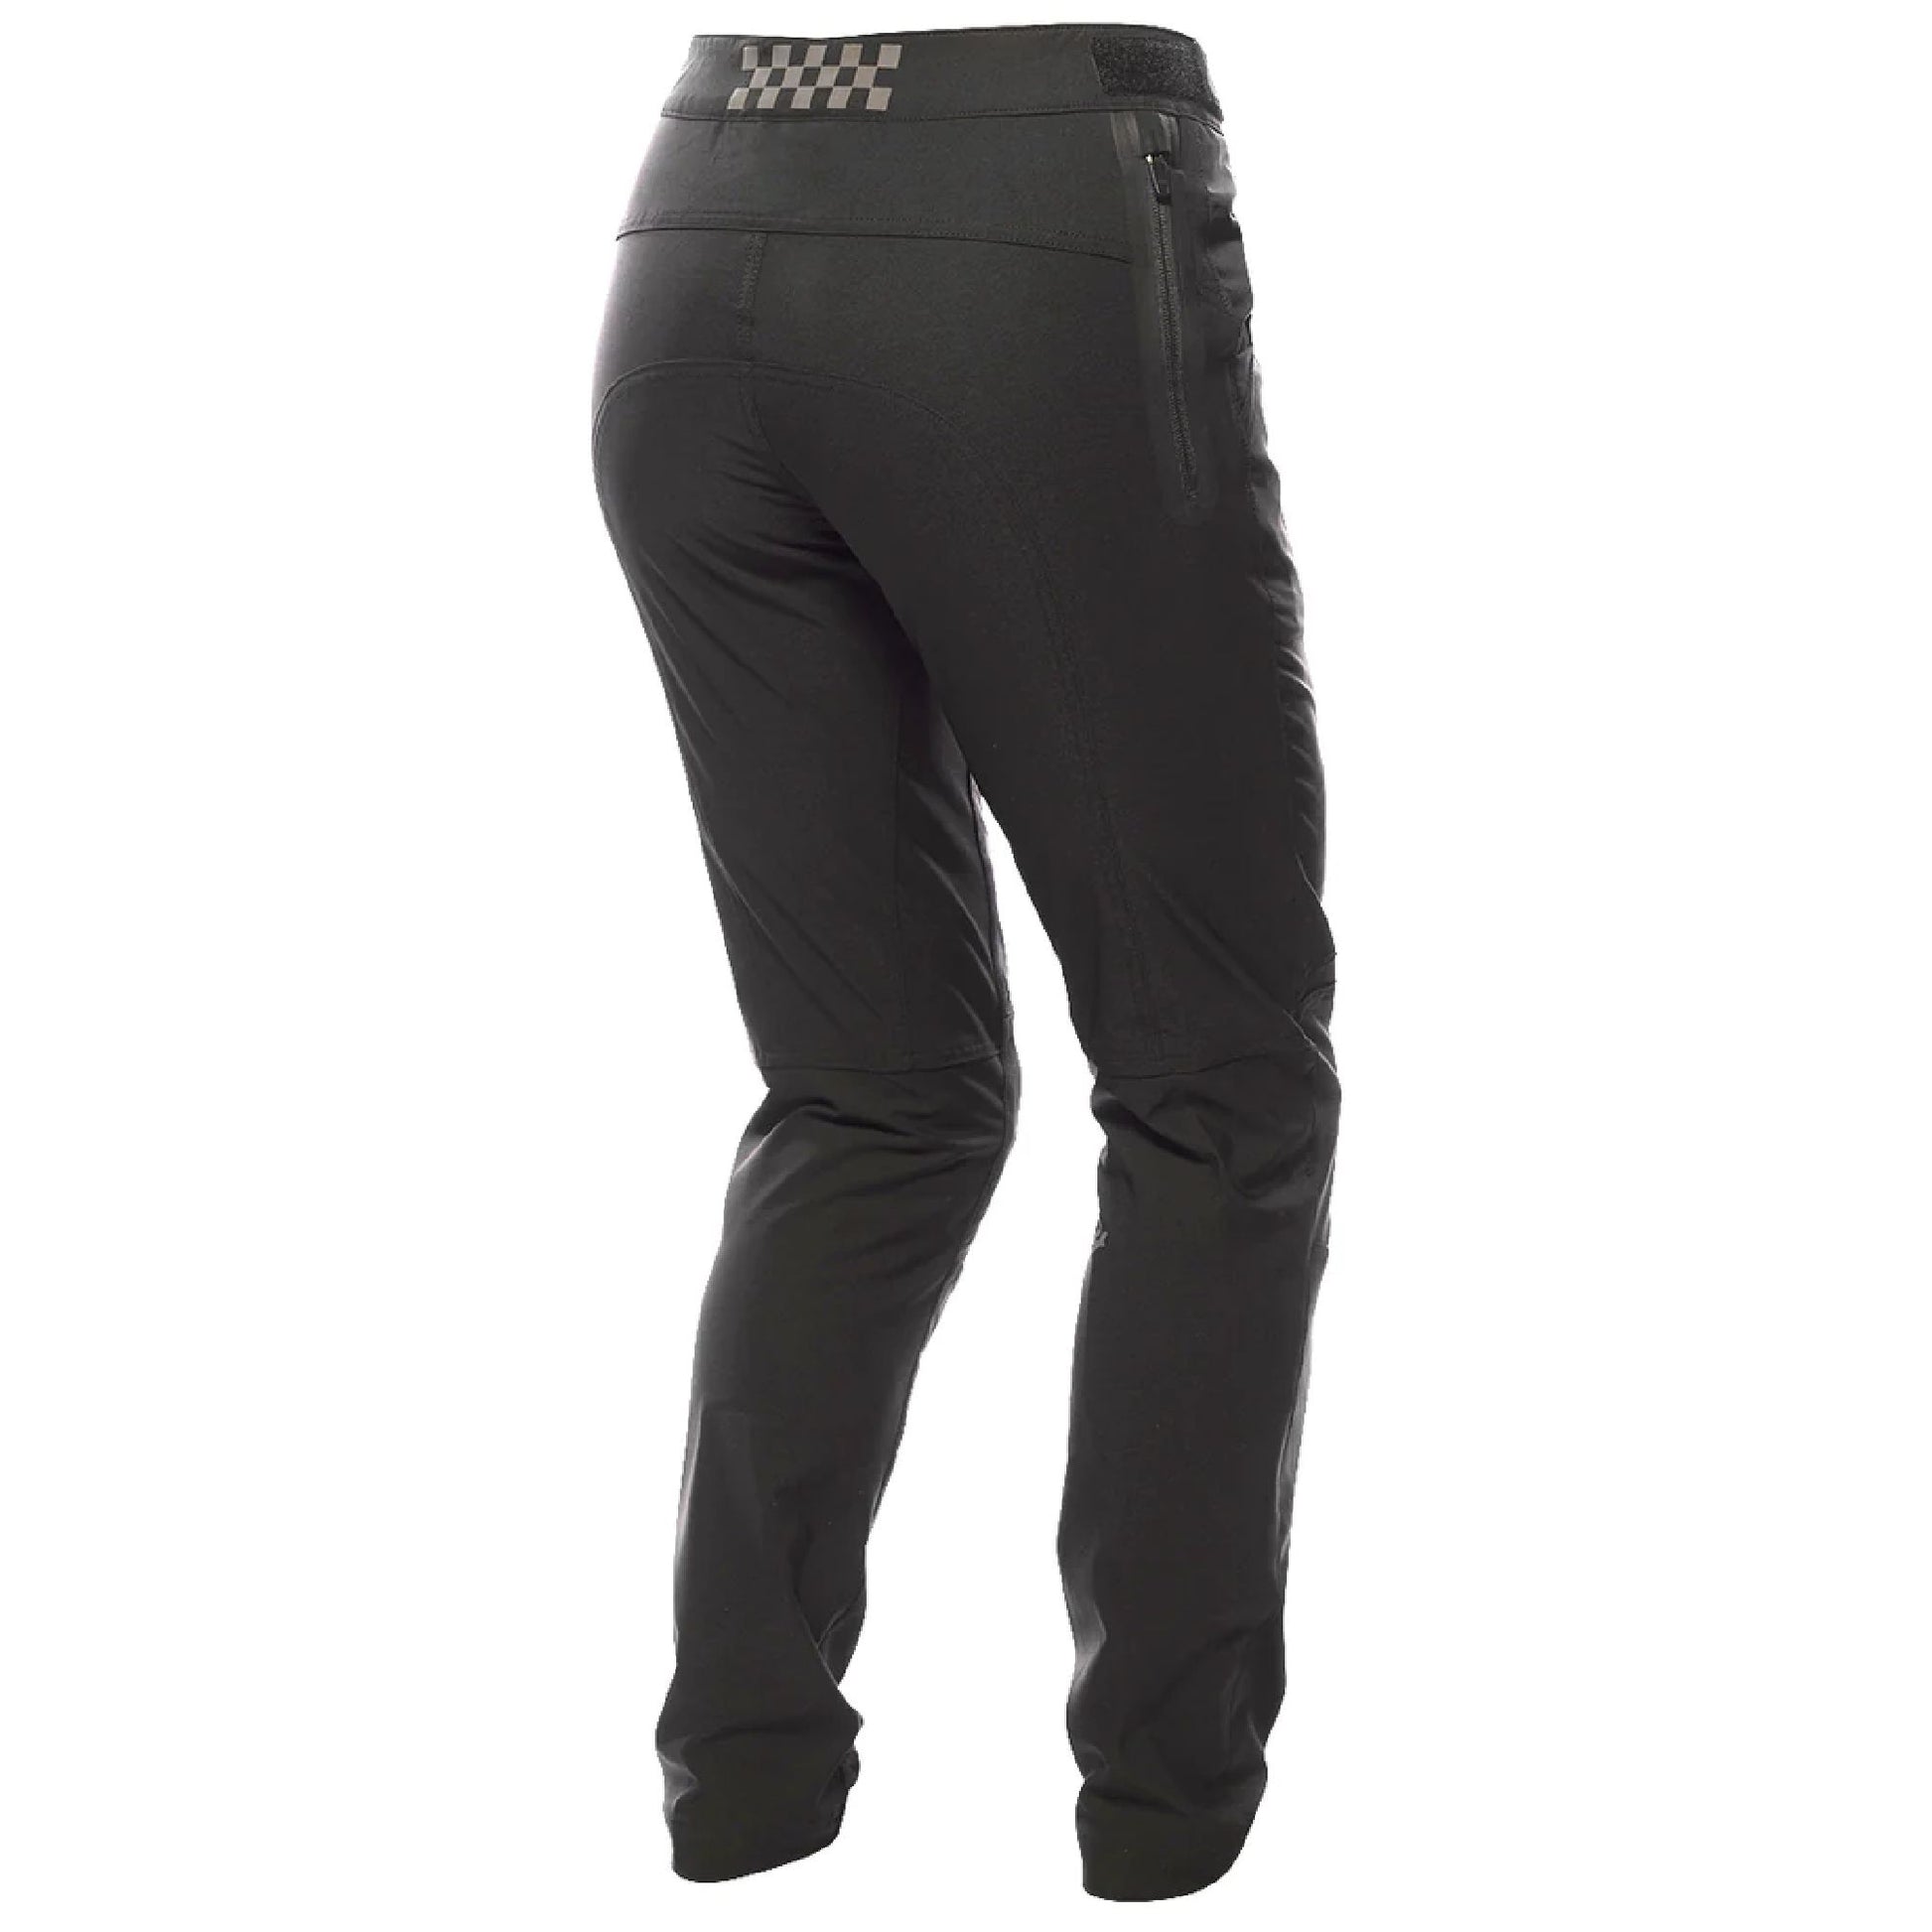 Fasthouse Women's Shredder Pant Black Bike Pants